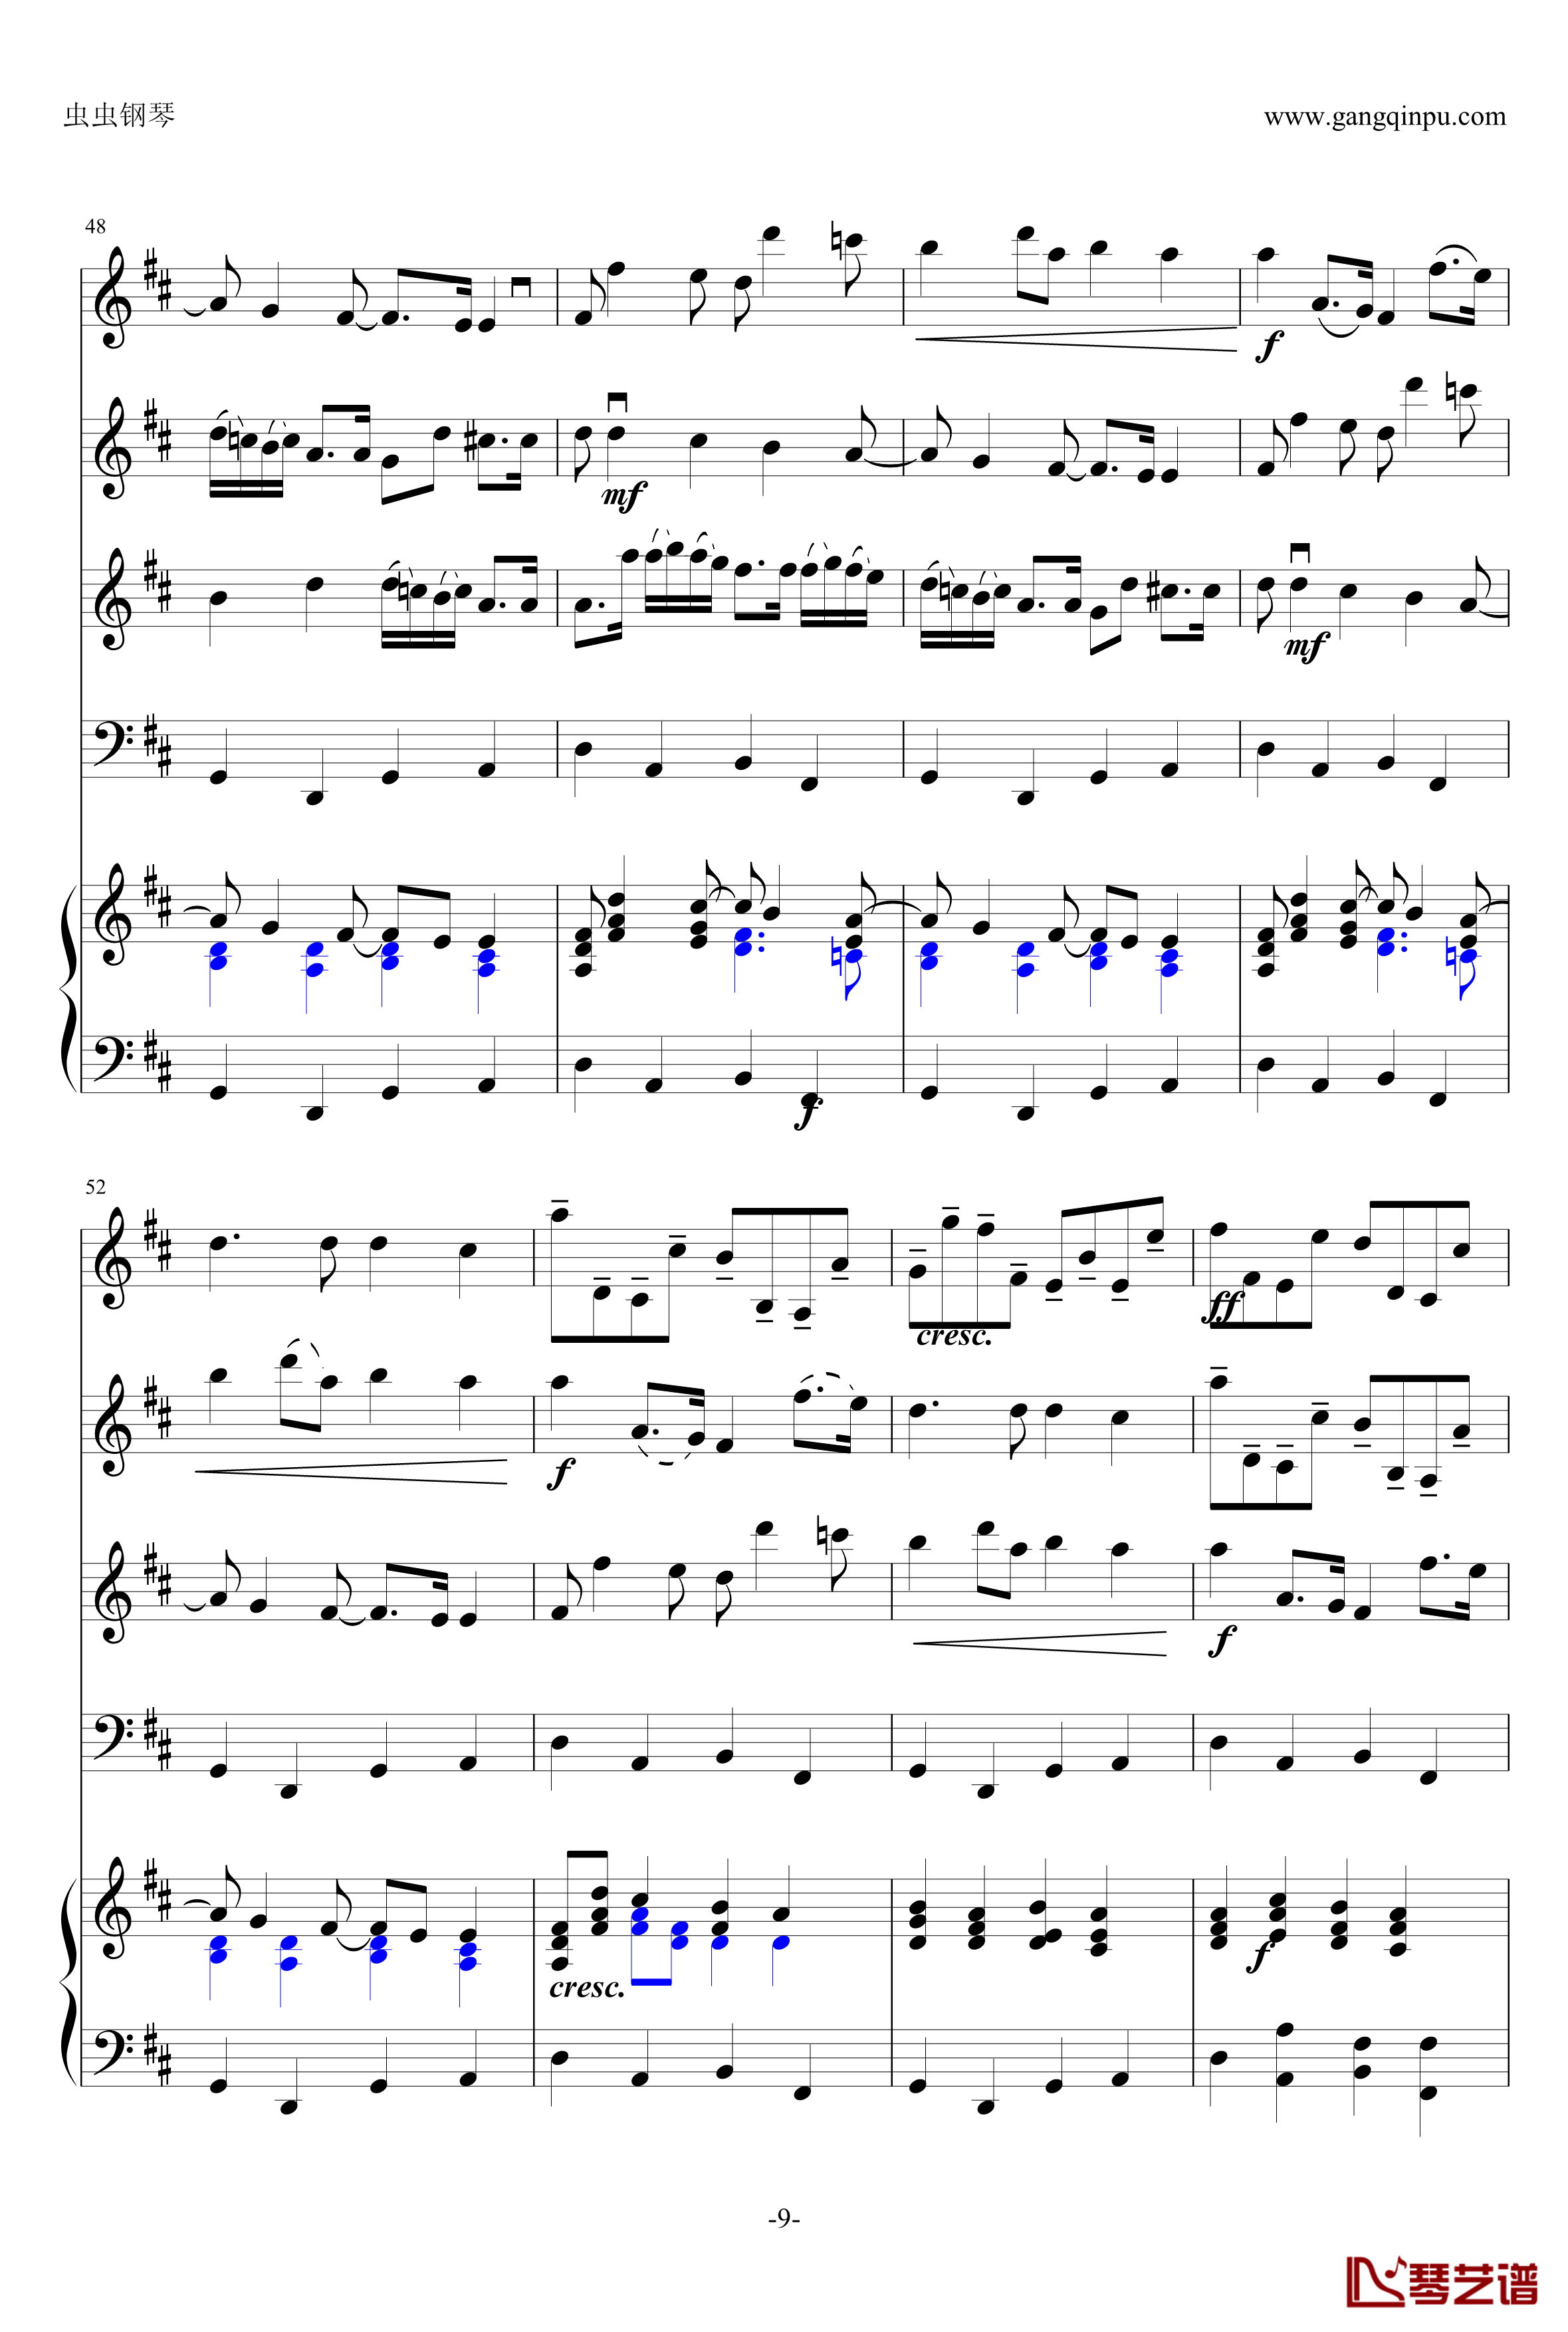 卡农钢琴谱-原版引进-帕赫贝尔-Pachelbel9